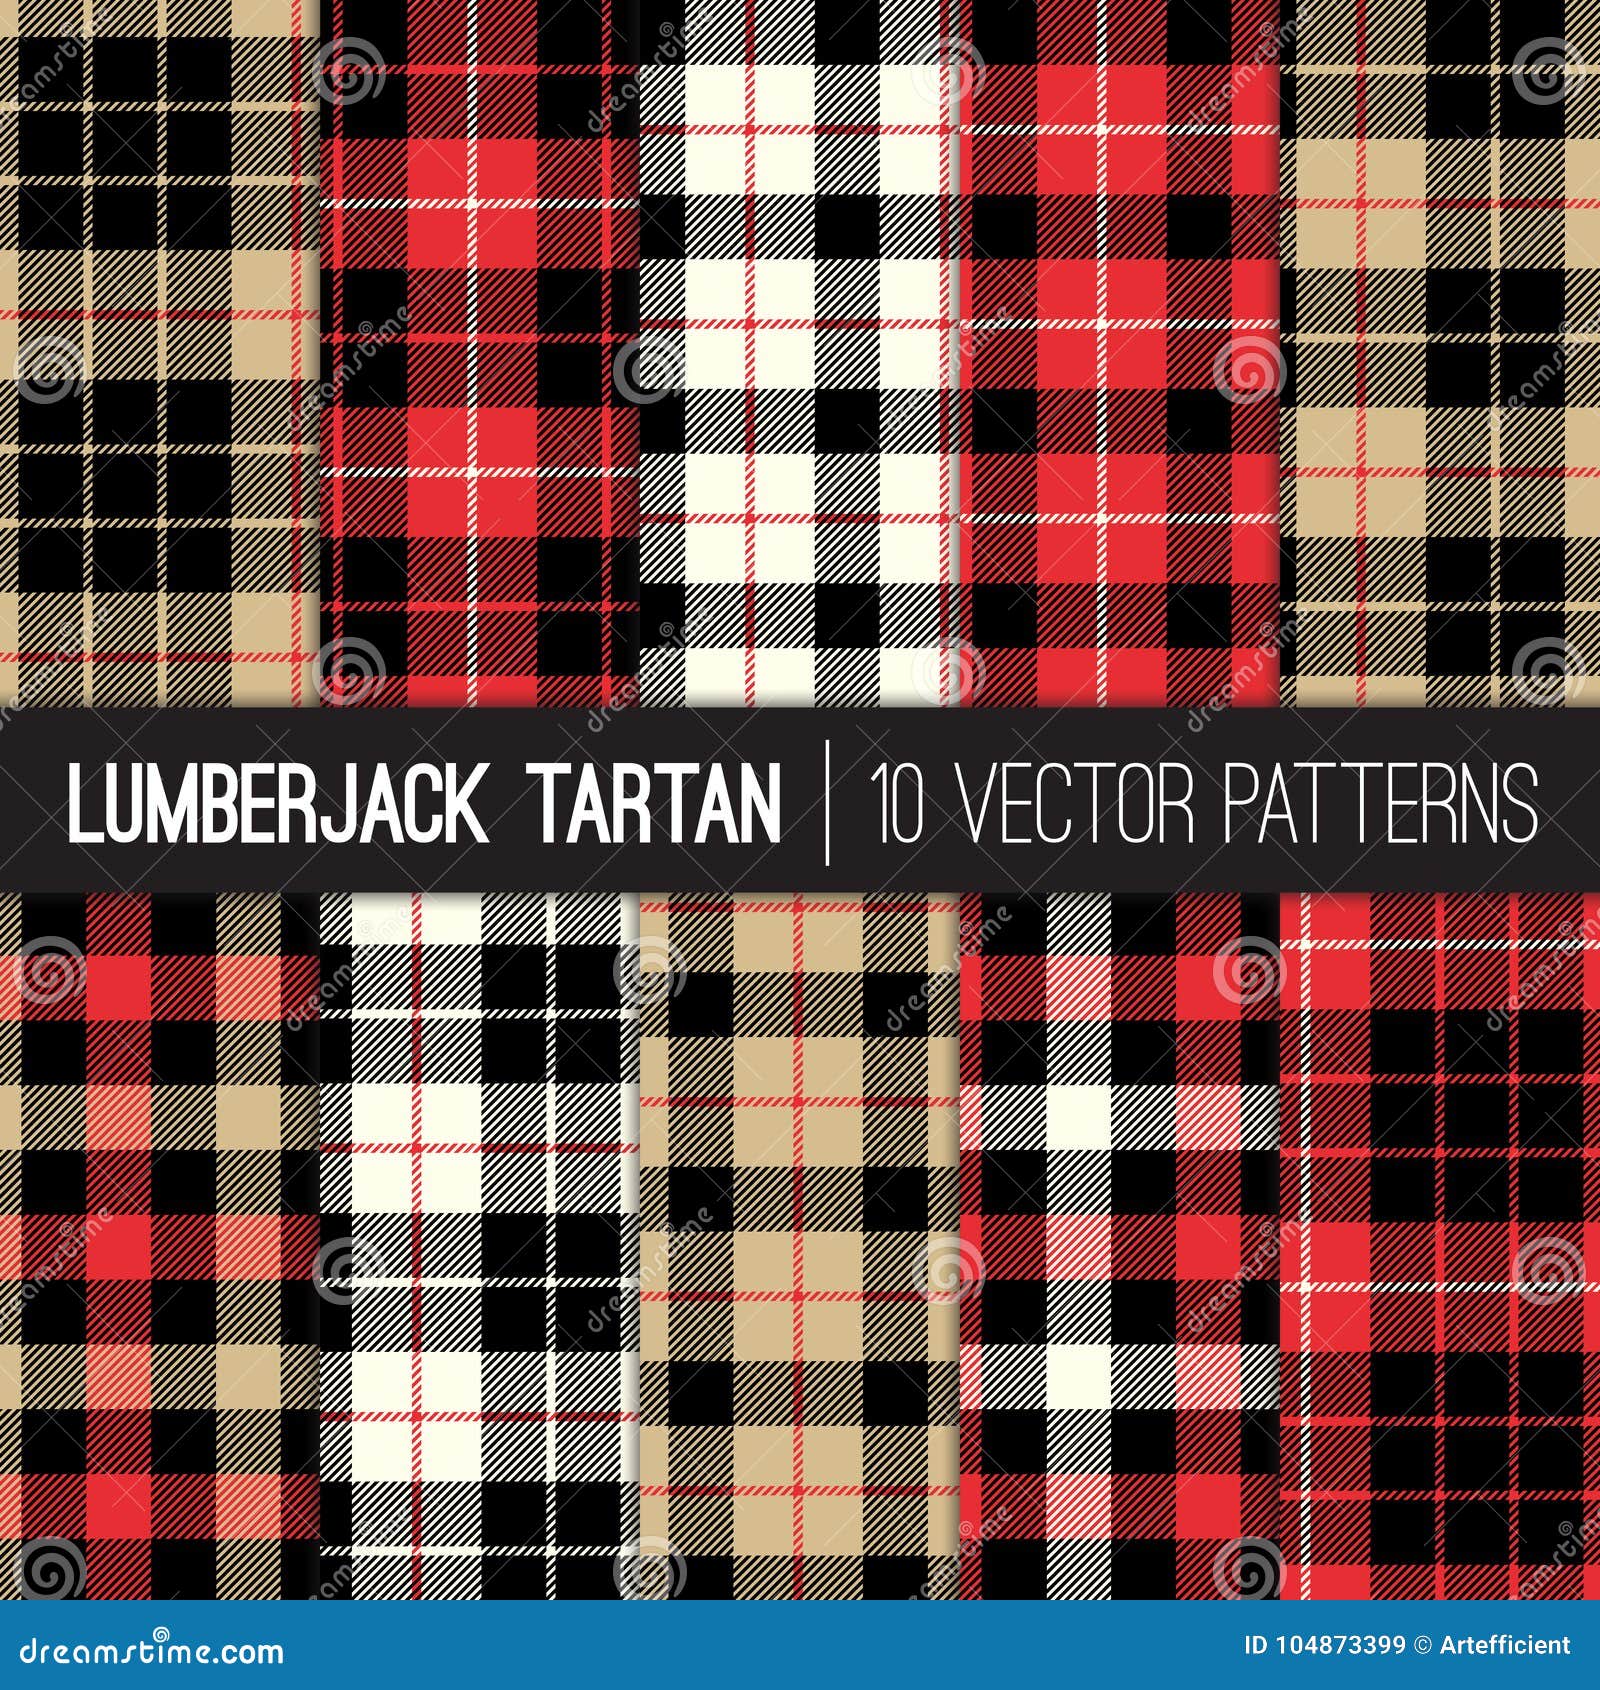 lumberjack tartan plaid  seamless patterns in red, black, tan and white.